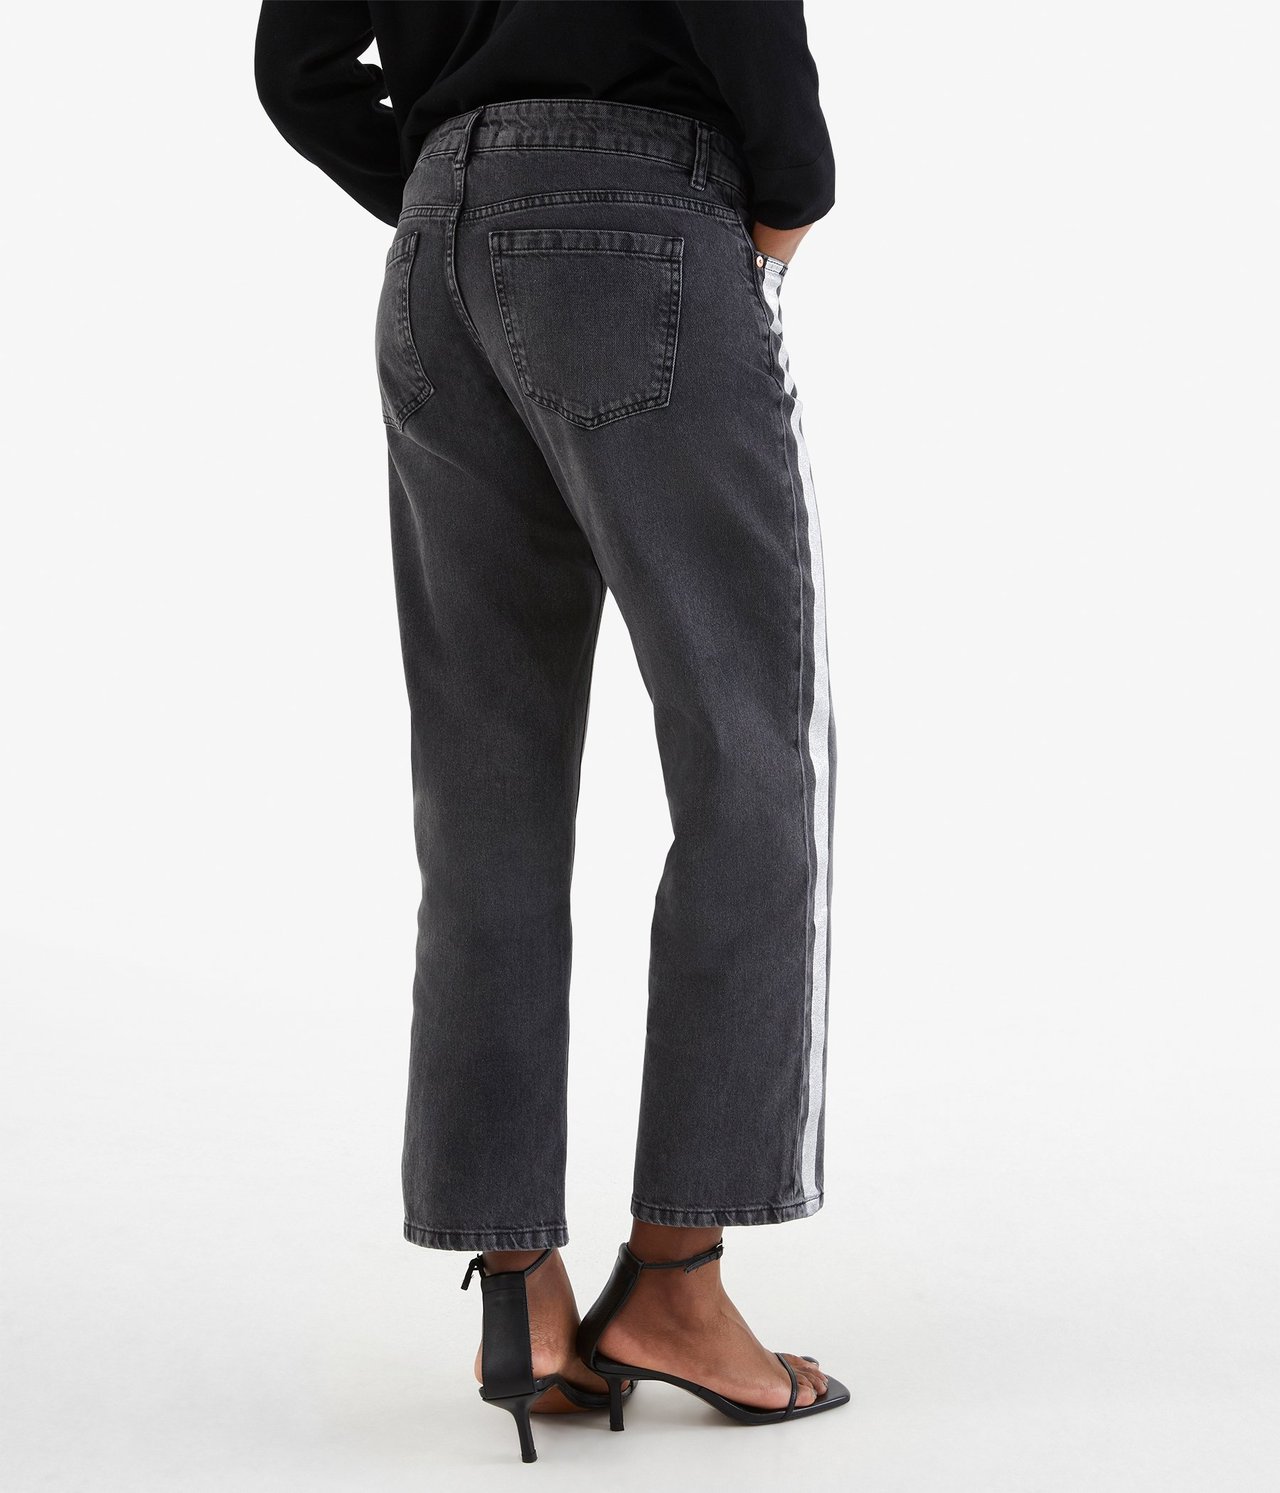 Kort jeans med striper Svart - null - 2